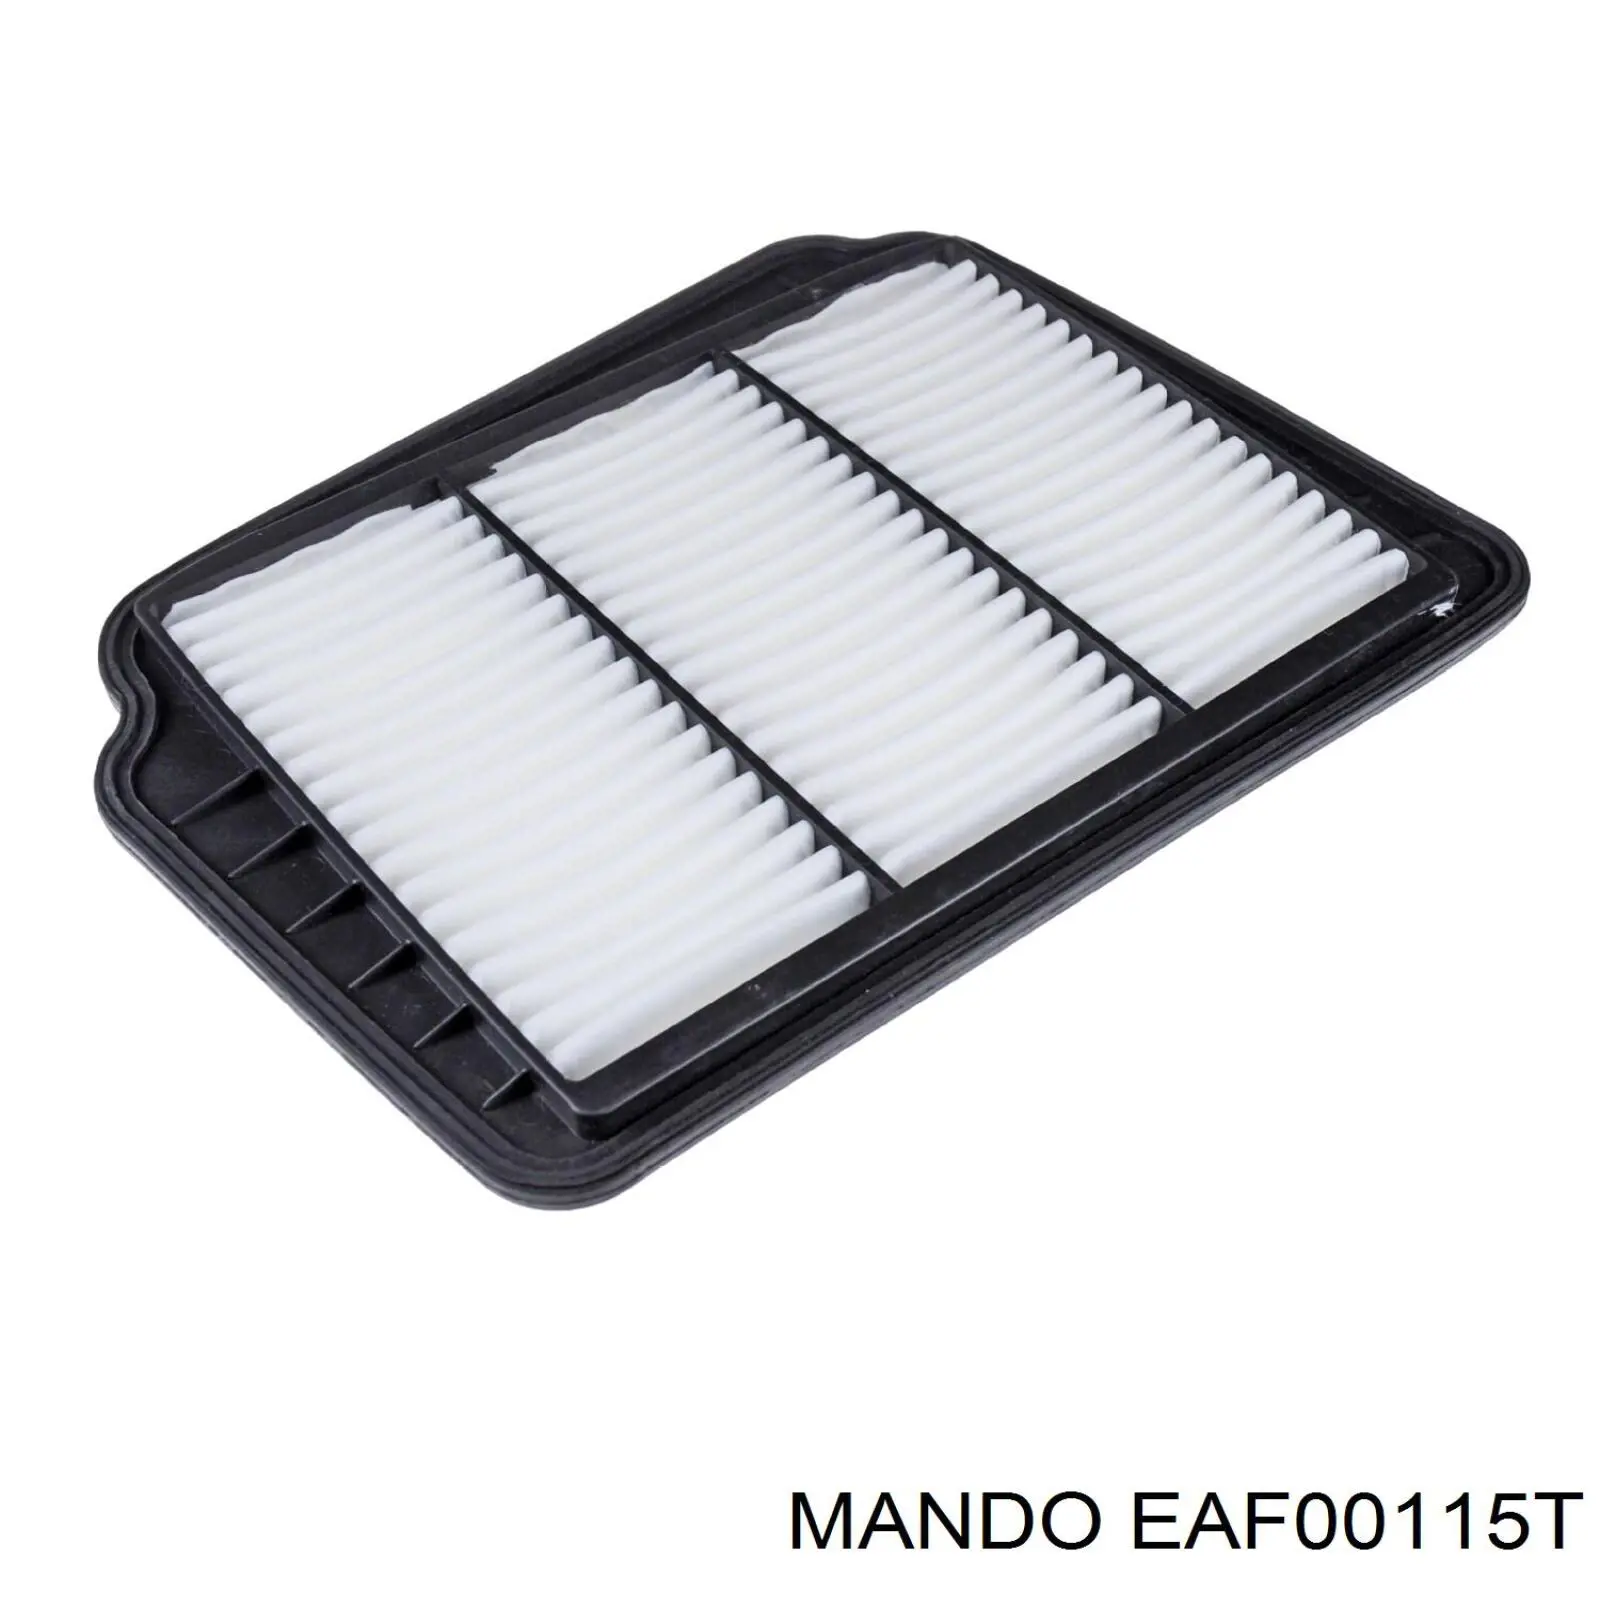 EAF00115T Mando воздушный фильтр